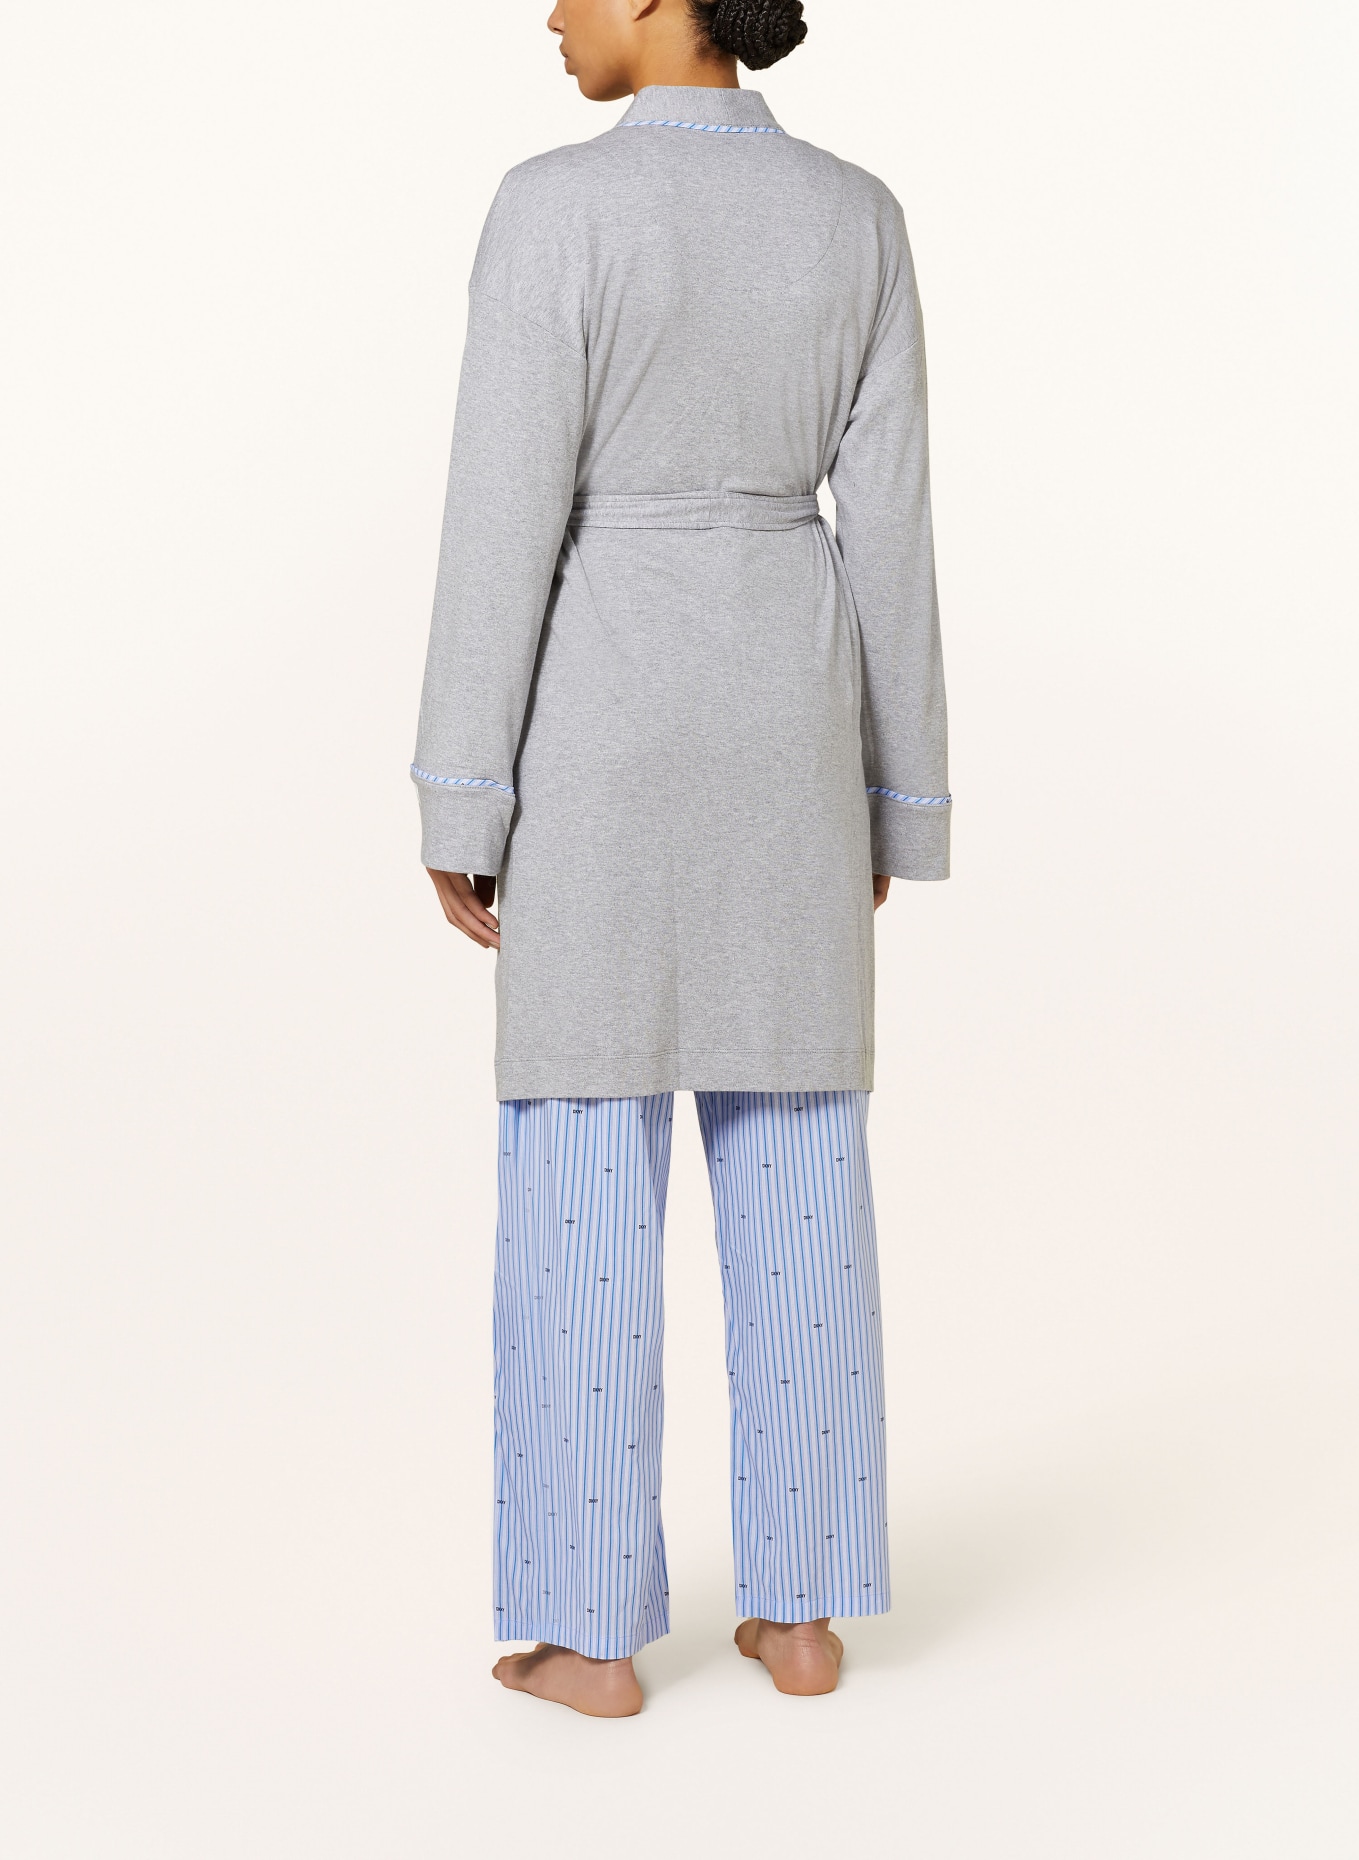 DKNY Women’s bathrobe, Color: GRAY (Image 3)